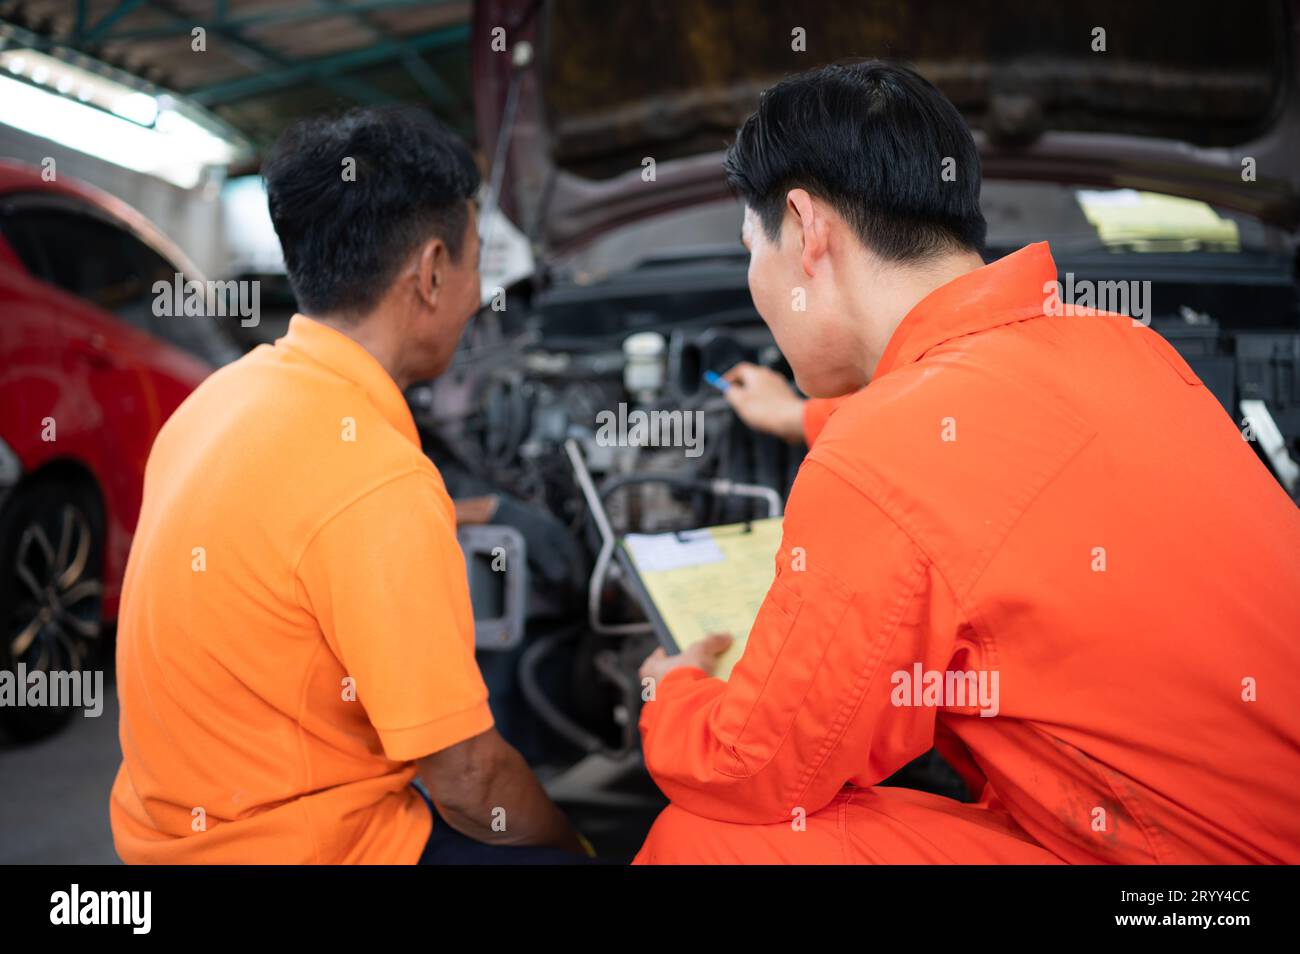 Les deux mécaniciens inspectent le moteur de la voiture d'un client qui est amené pour réparation dans un garage. Banque D'Images